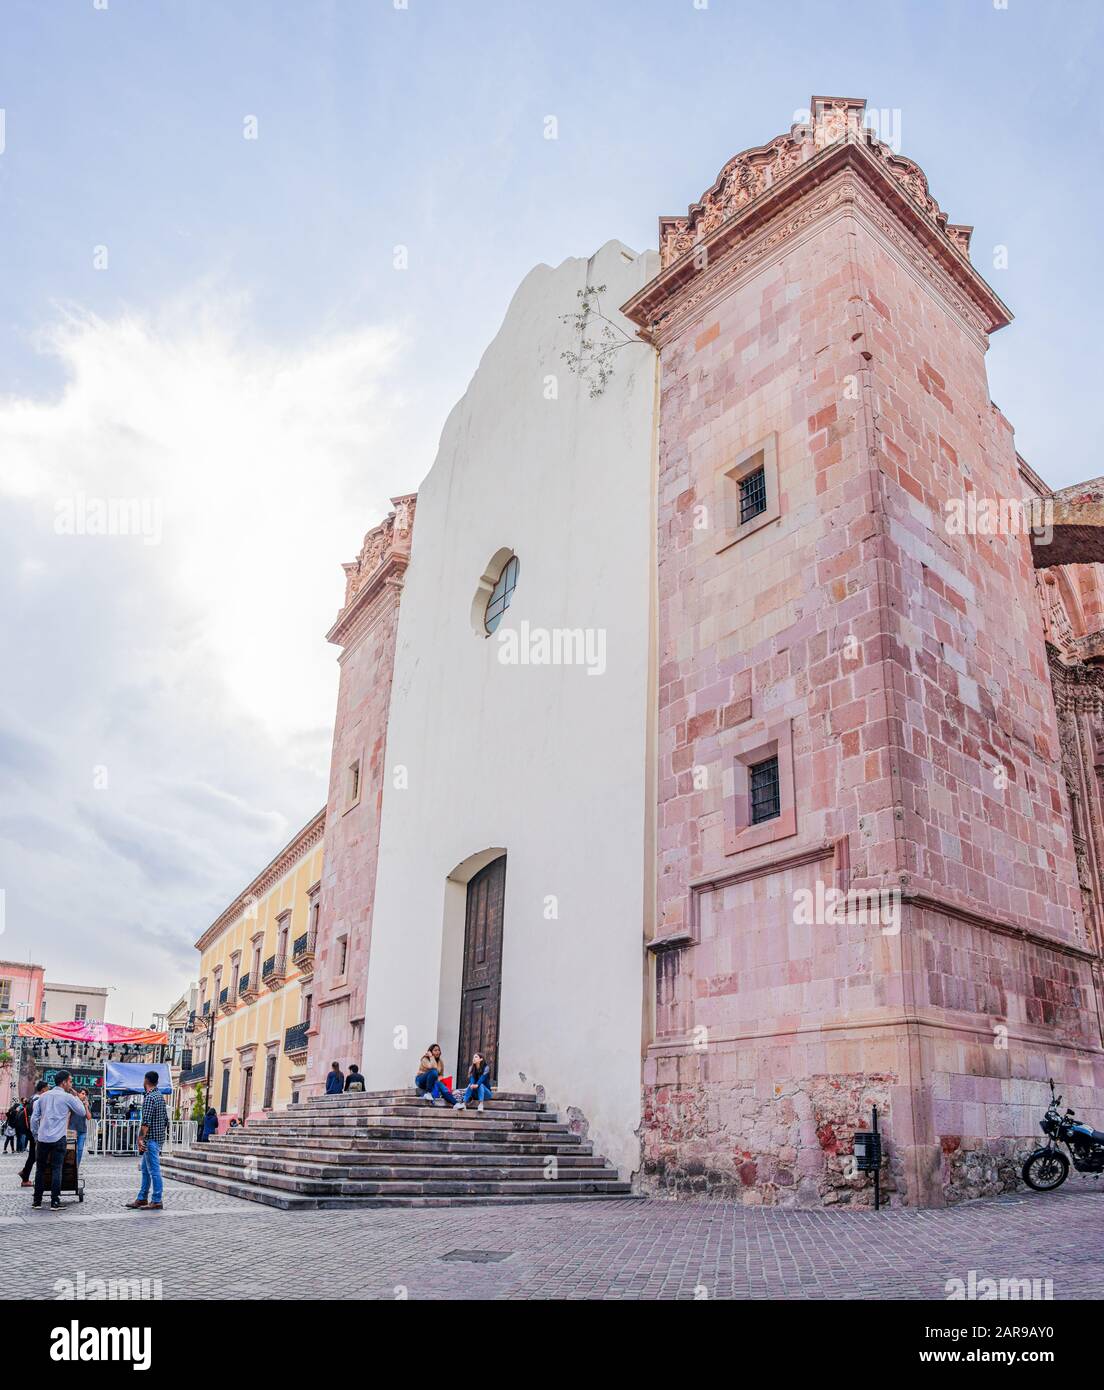 Zacatecas, Zacatecas, Mexiko - 22. November 2019: Menschen, die am ehemaligen Templo de San Agustín, heute ein Museum, ruhen und spazieren gehen Stockfoto